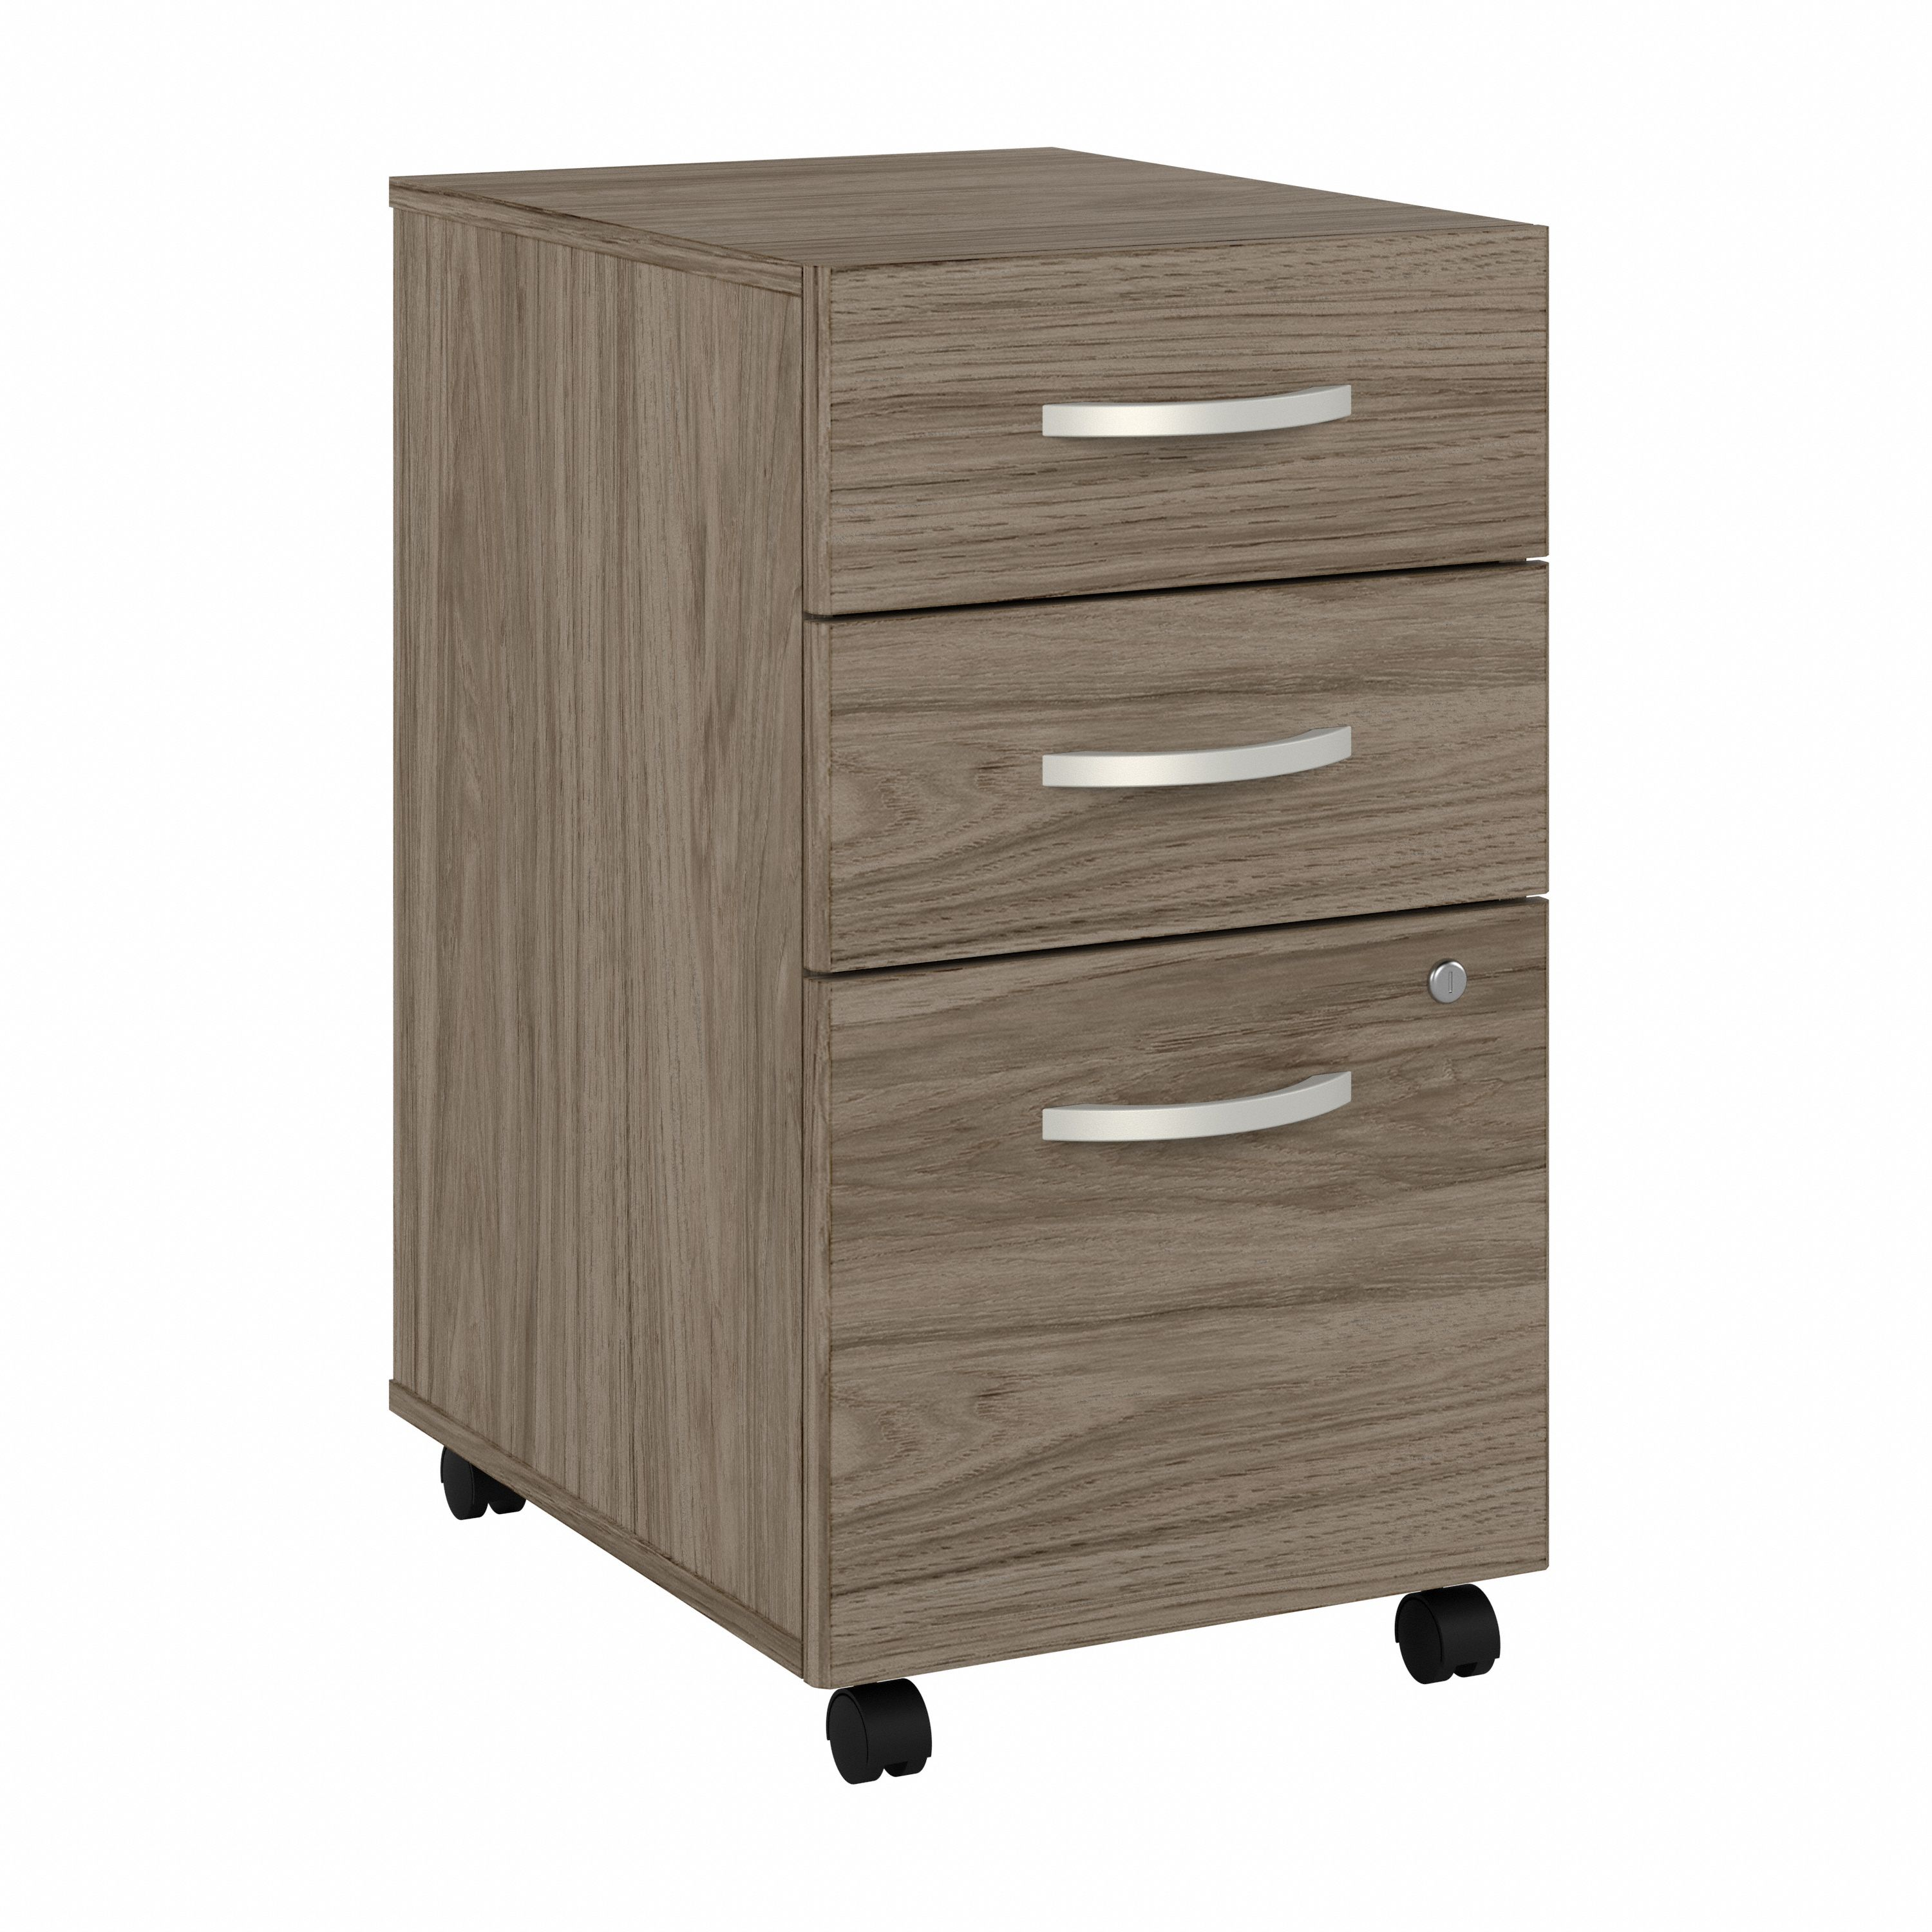 Shop Bush Business Furniture Studio C 3 Drawer Mobile File Cabinet 02 SCF216MHSU #color_modern hickory